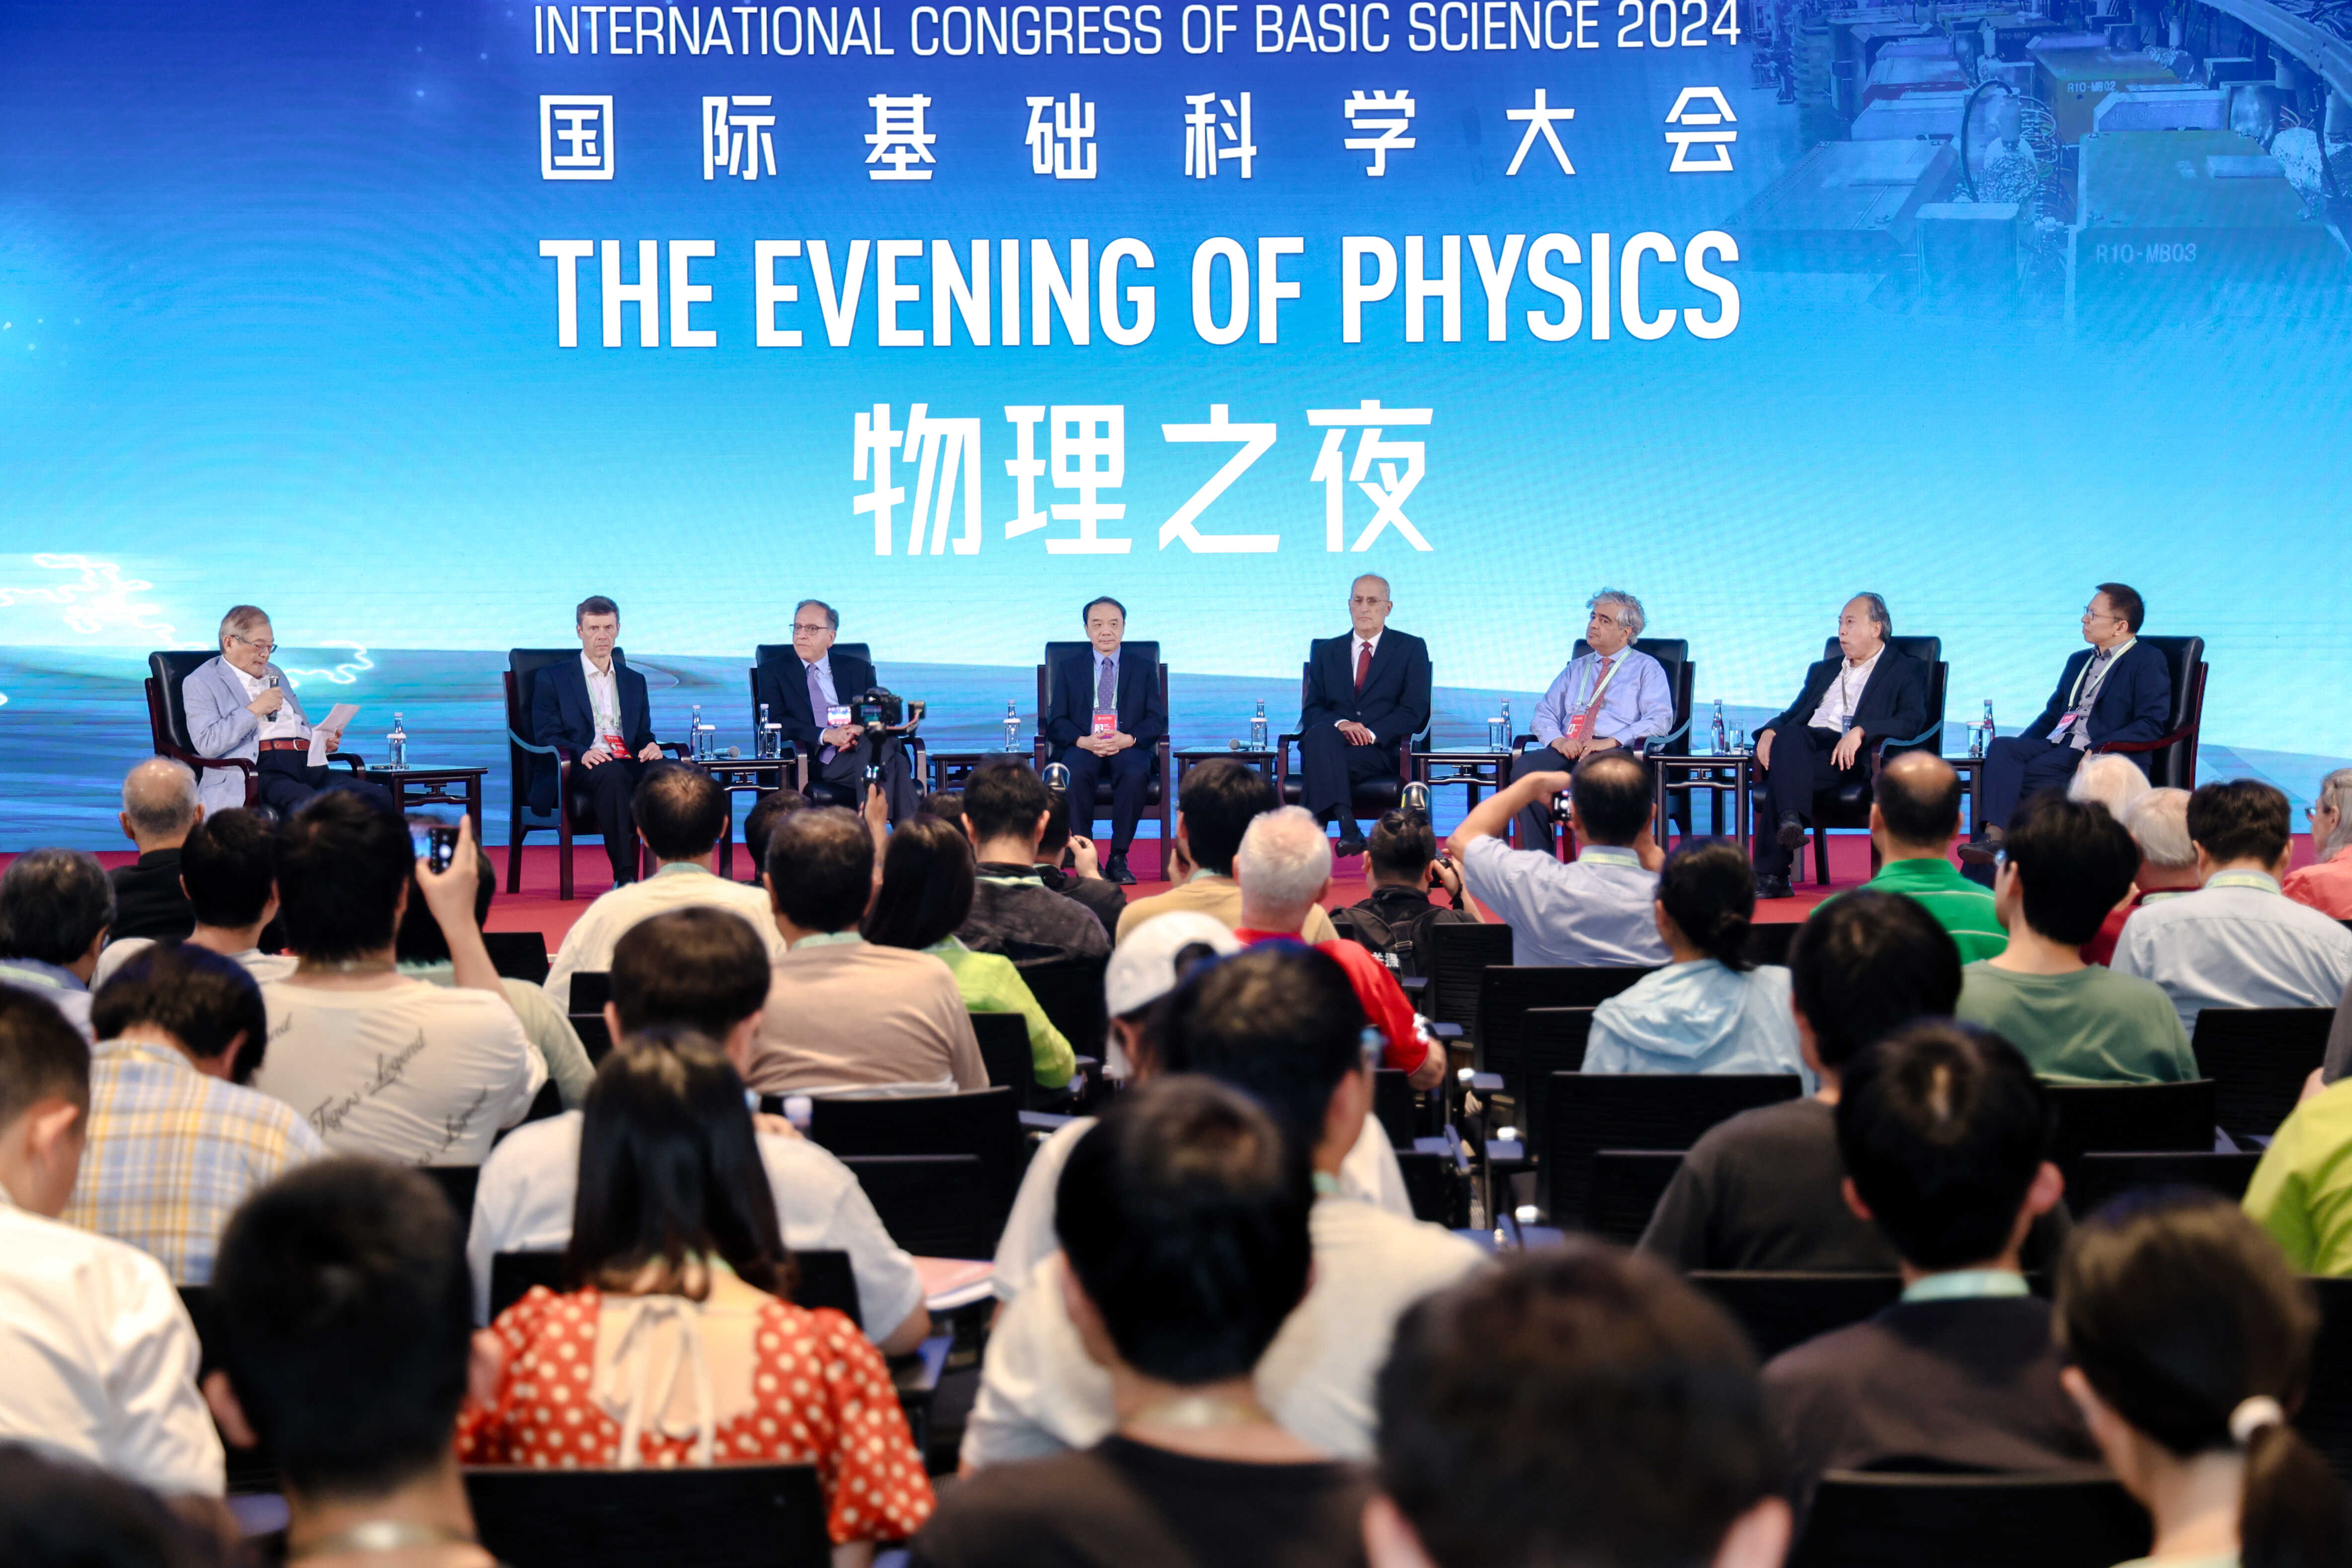 第二届国际基础科学大会——“物理之夜”专场沙龙活动召开